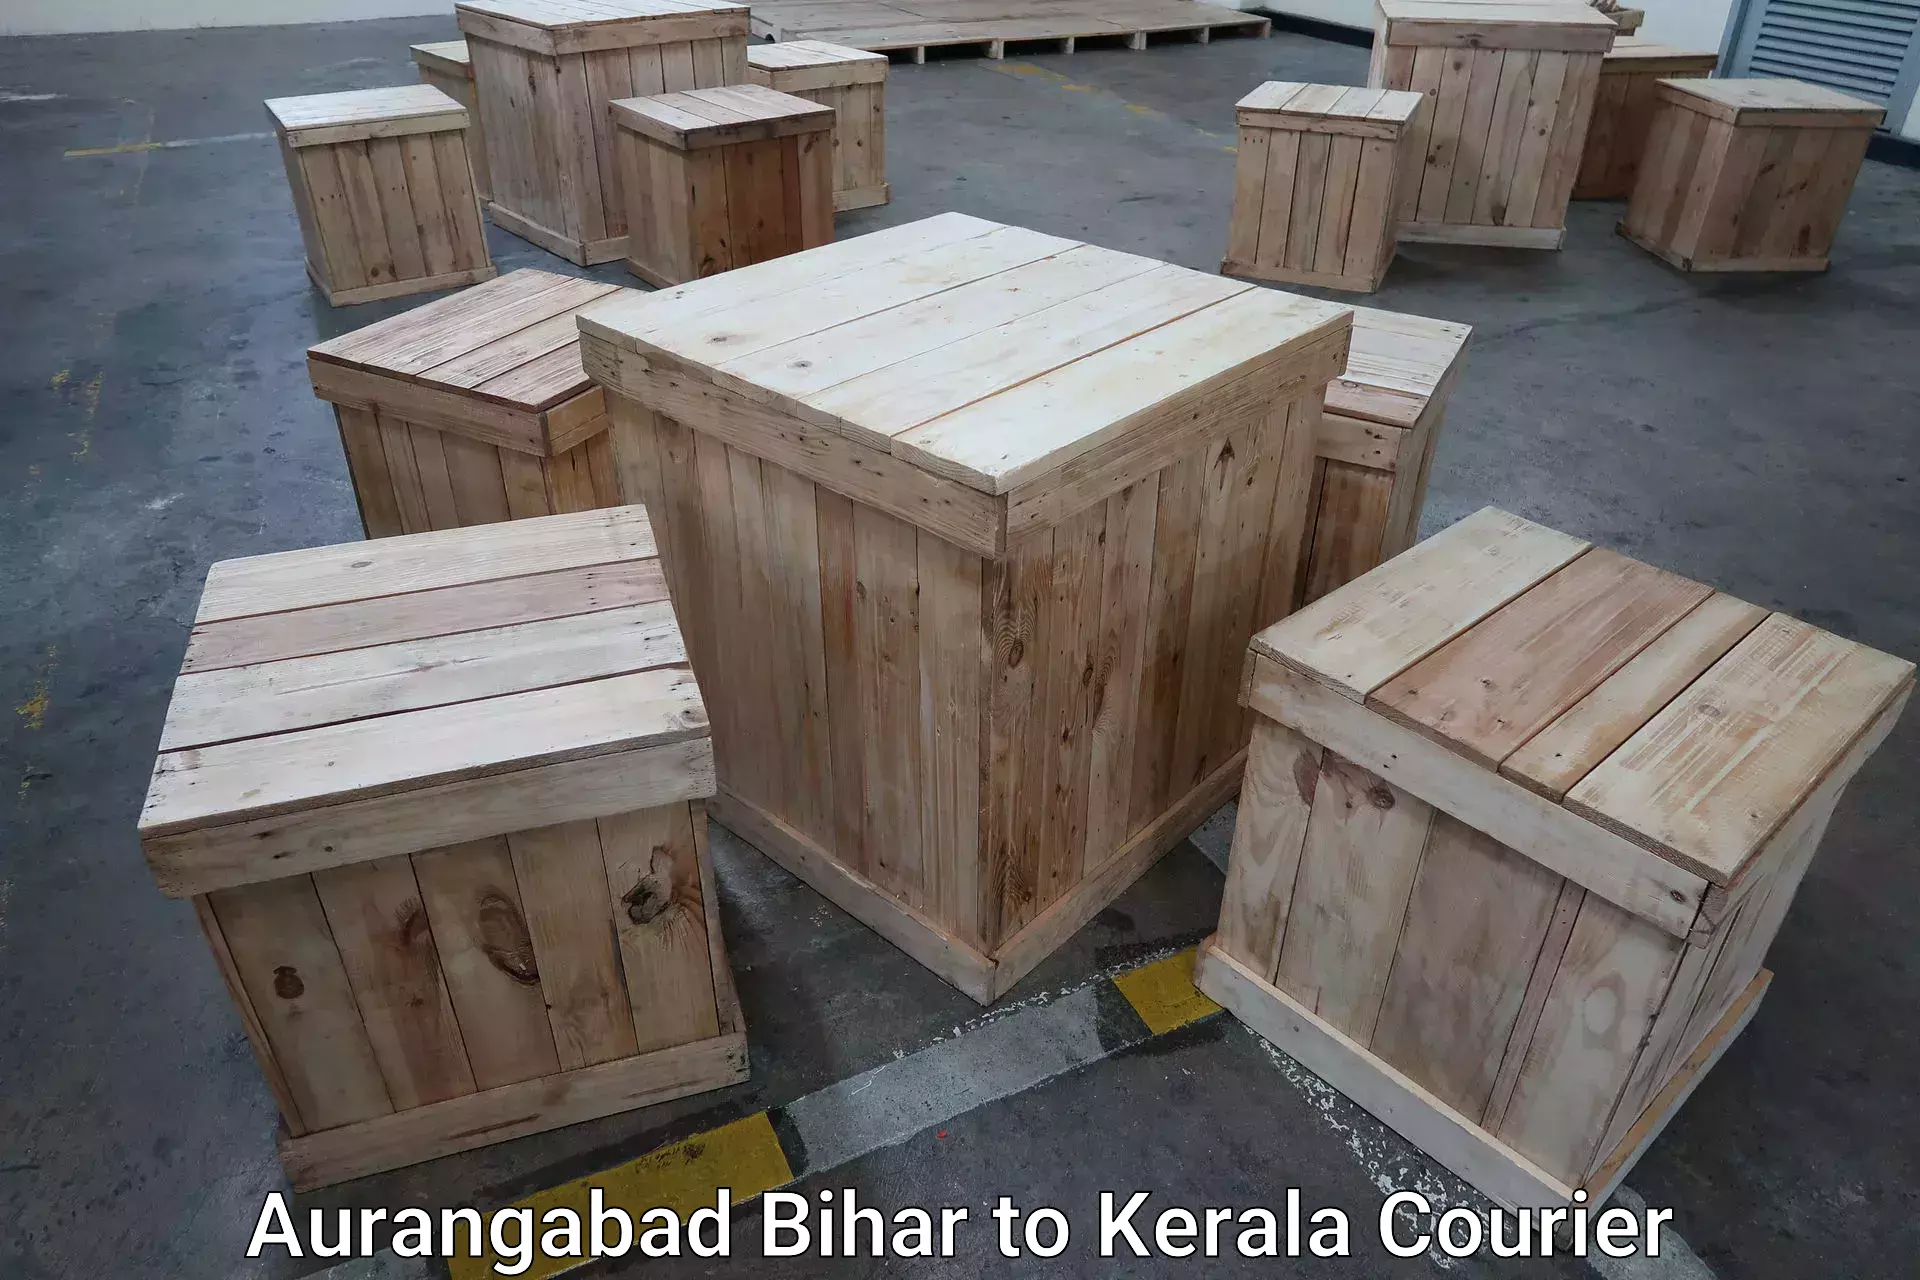 Door-to-door baggage service Aurangabad Bihar to Irinjalakuda